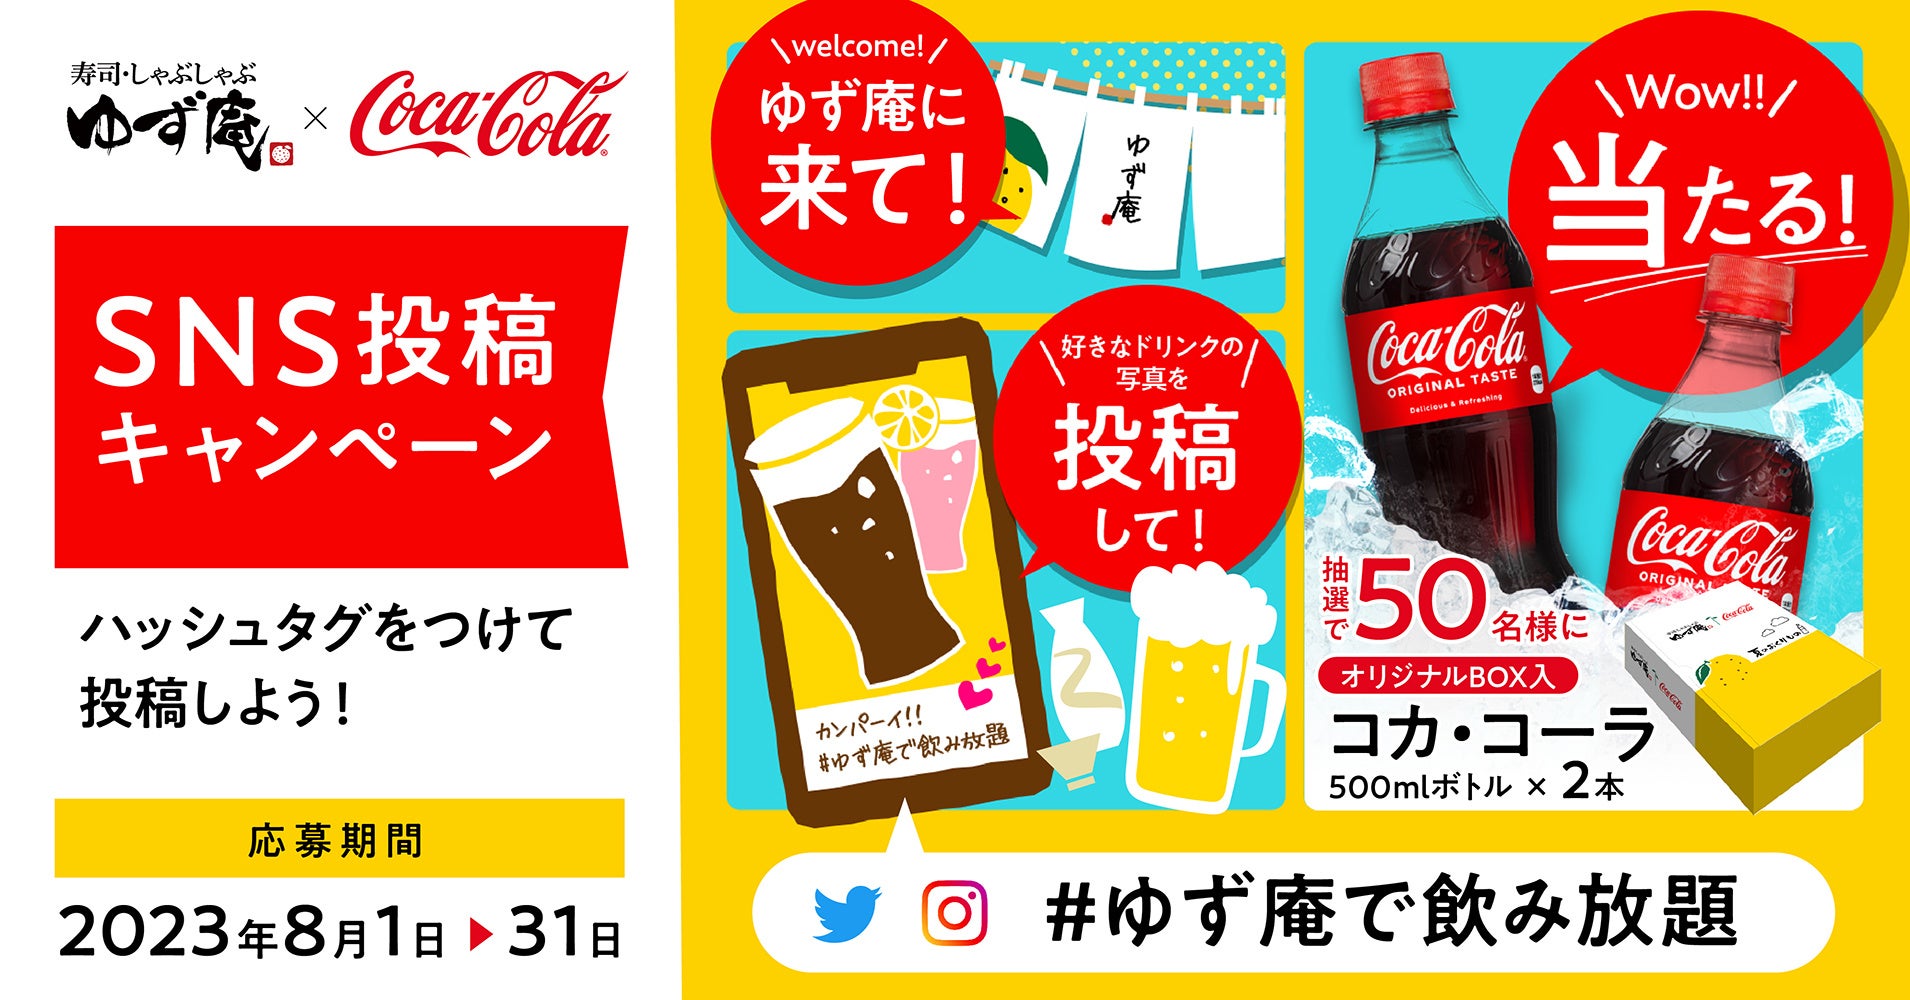 【ゆず庵】オリジナルパッケージの「コカ・コーラ」が当たるSNSキャンペーンを開催